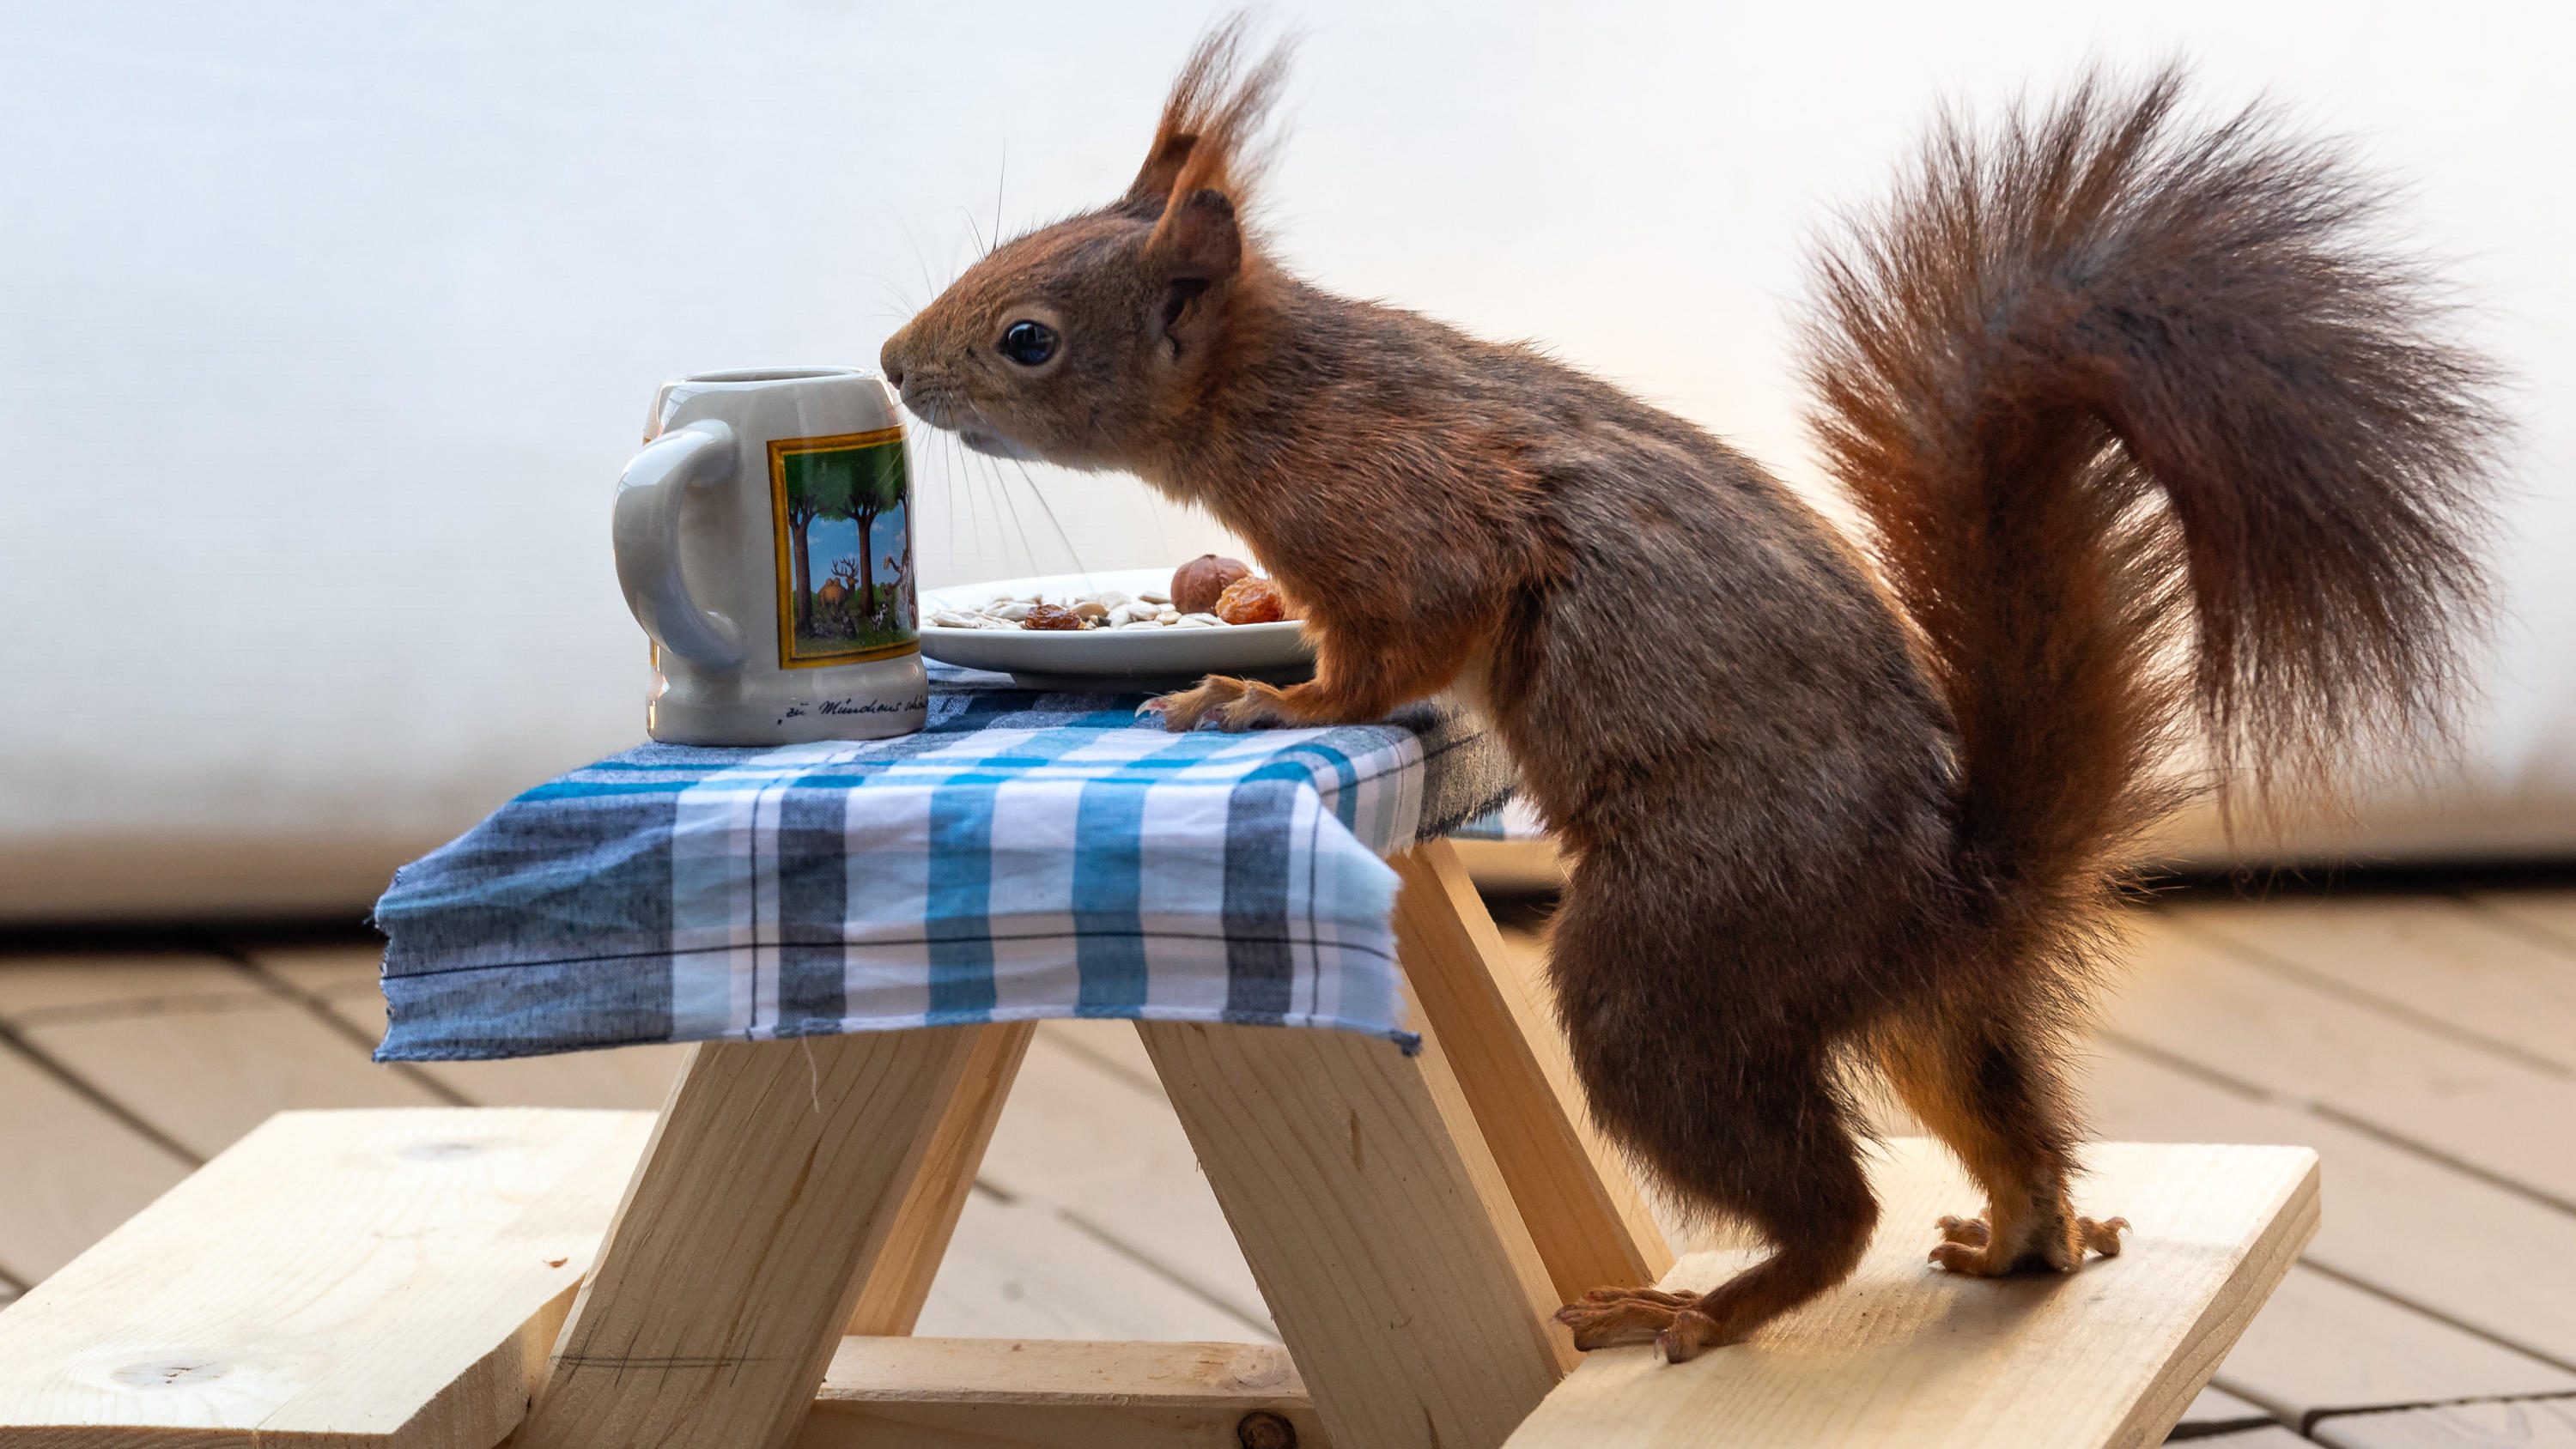 06.05.2020, Bayern, München: Ein rotes Eichhörnchen futtert auf einer extra angefertigten kleinen Bierbank, die auf einem Balkon steht, Nusskerne von einem kleinen Teller. Die Holzkonstruktion haben sich befreundete Kinder der Familie einfallen lasse